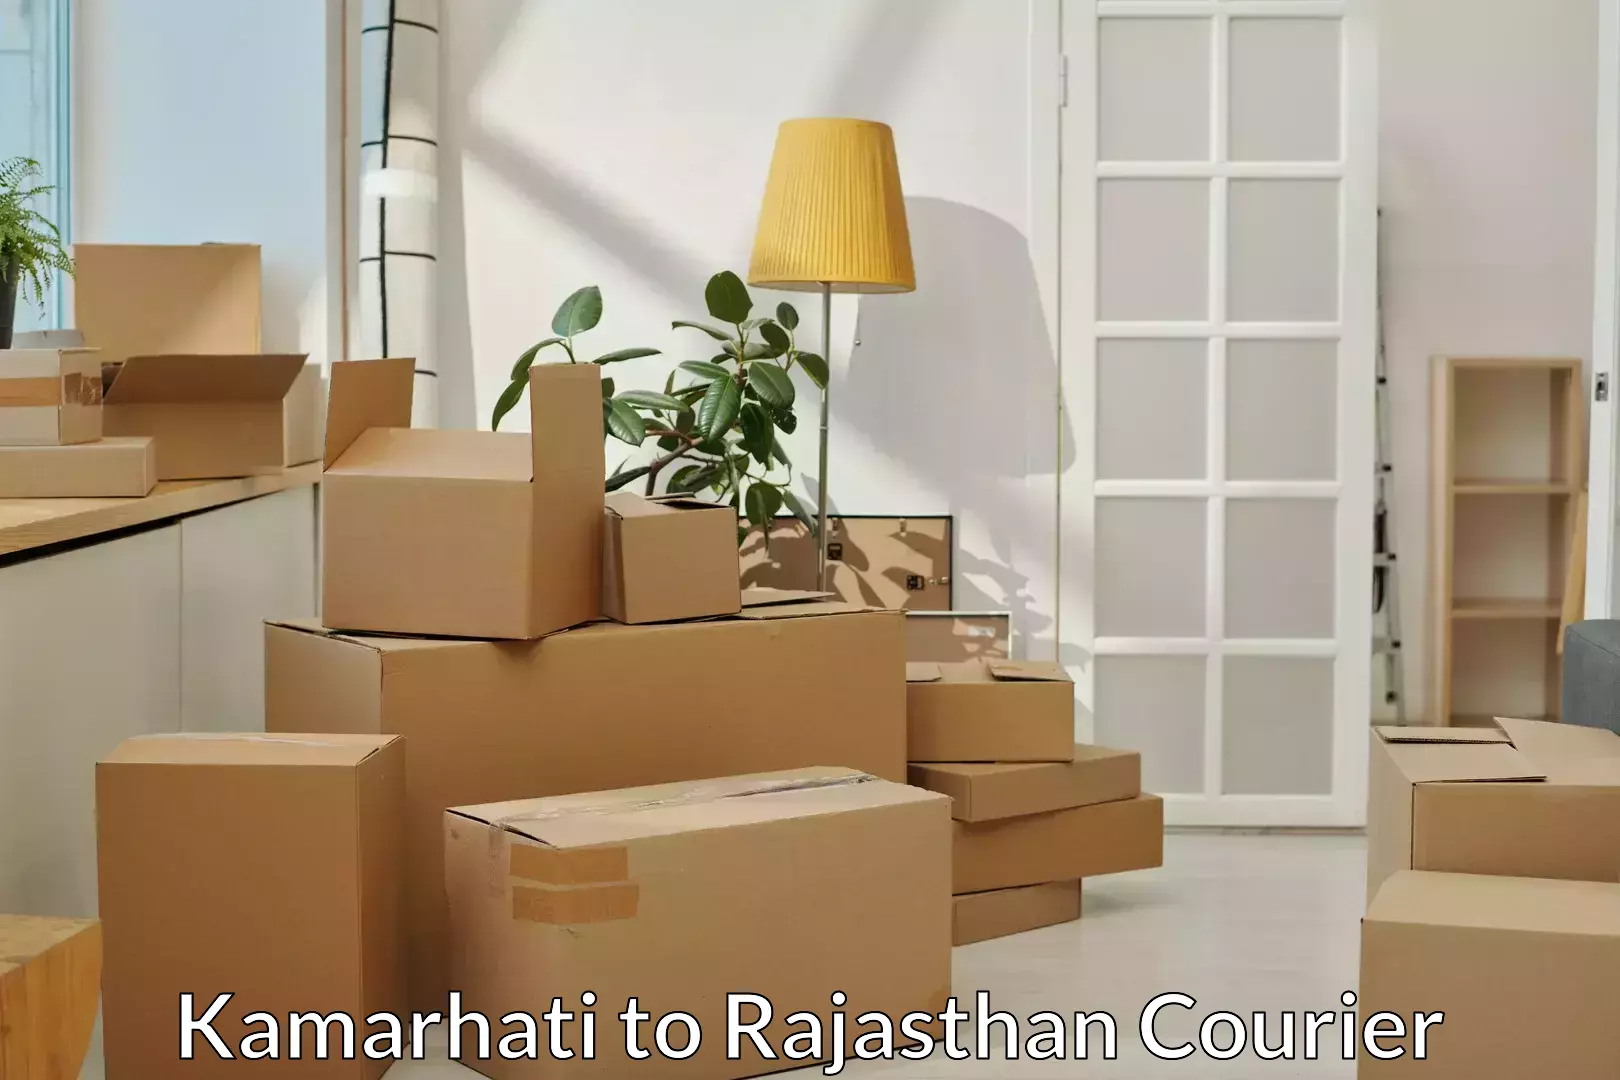 Furniture transport experts Kamarhati to Bhilwara